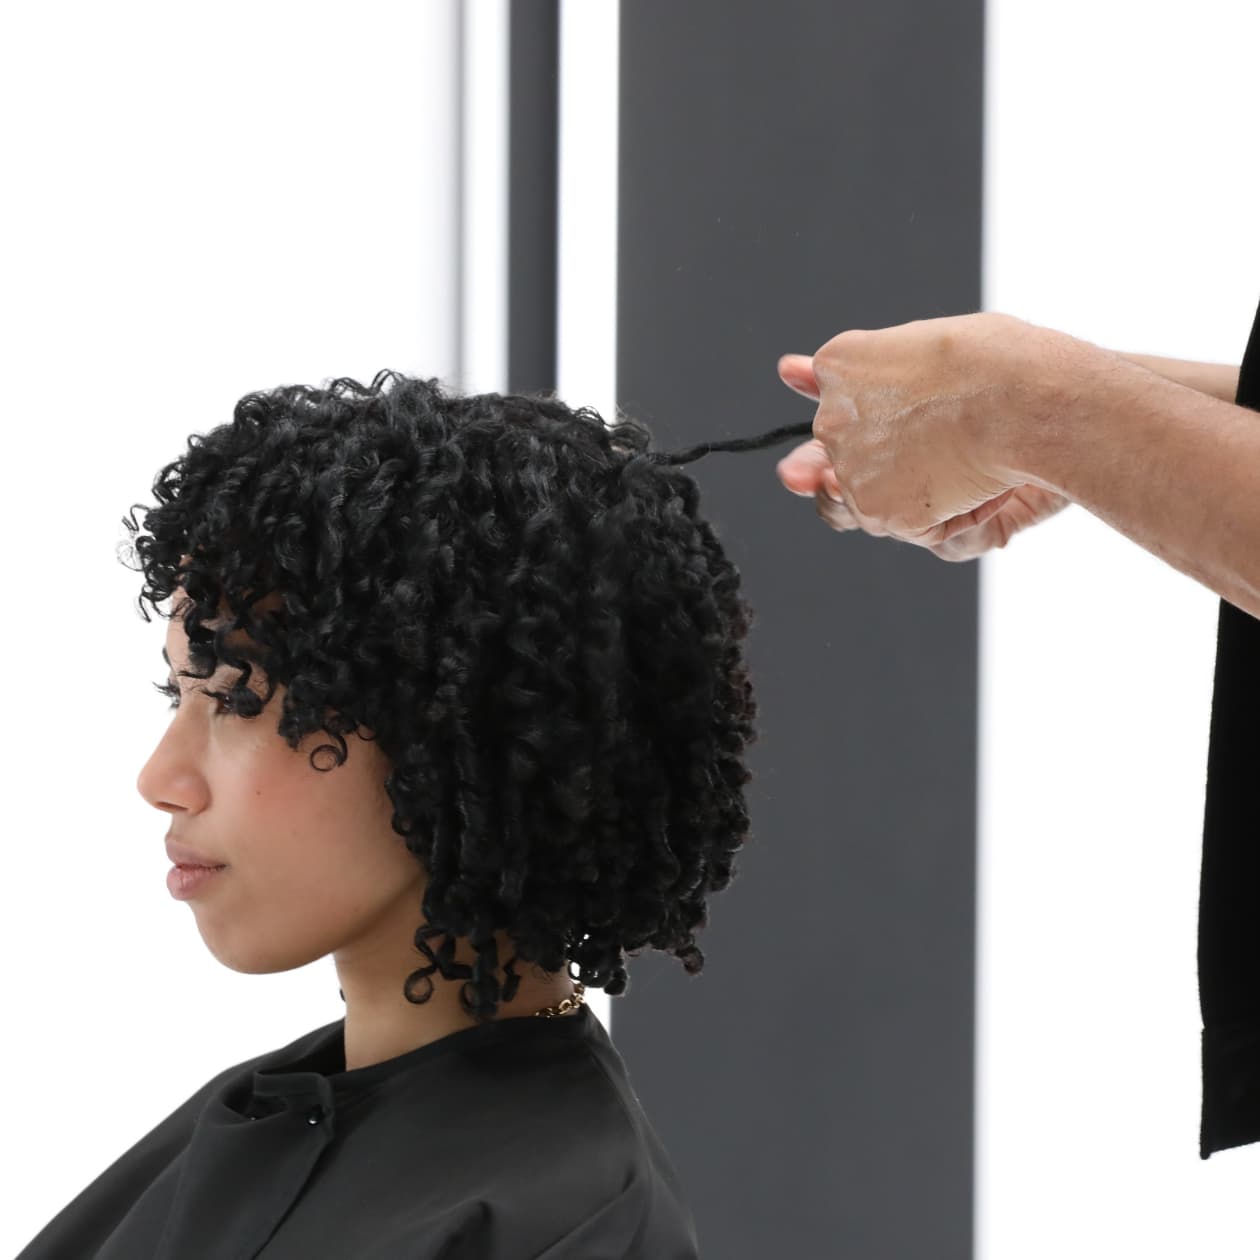 L'Oréal Professionnel Education Derick Monroe hairdresser